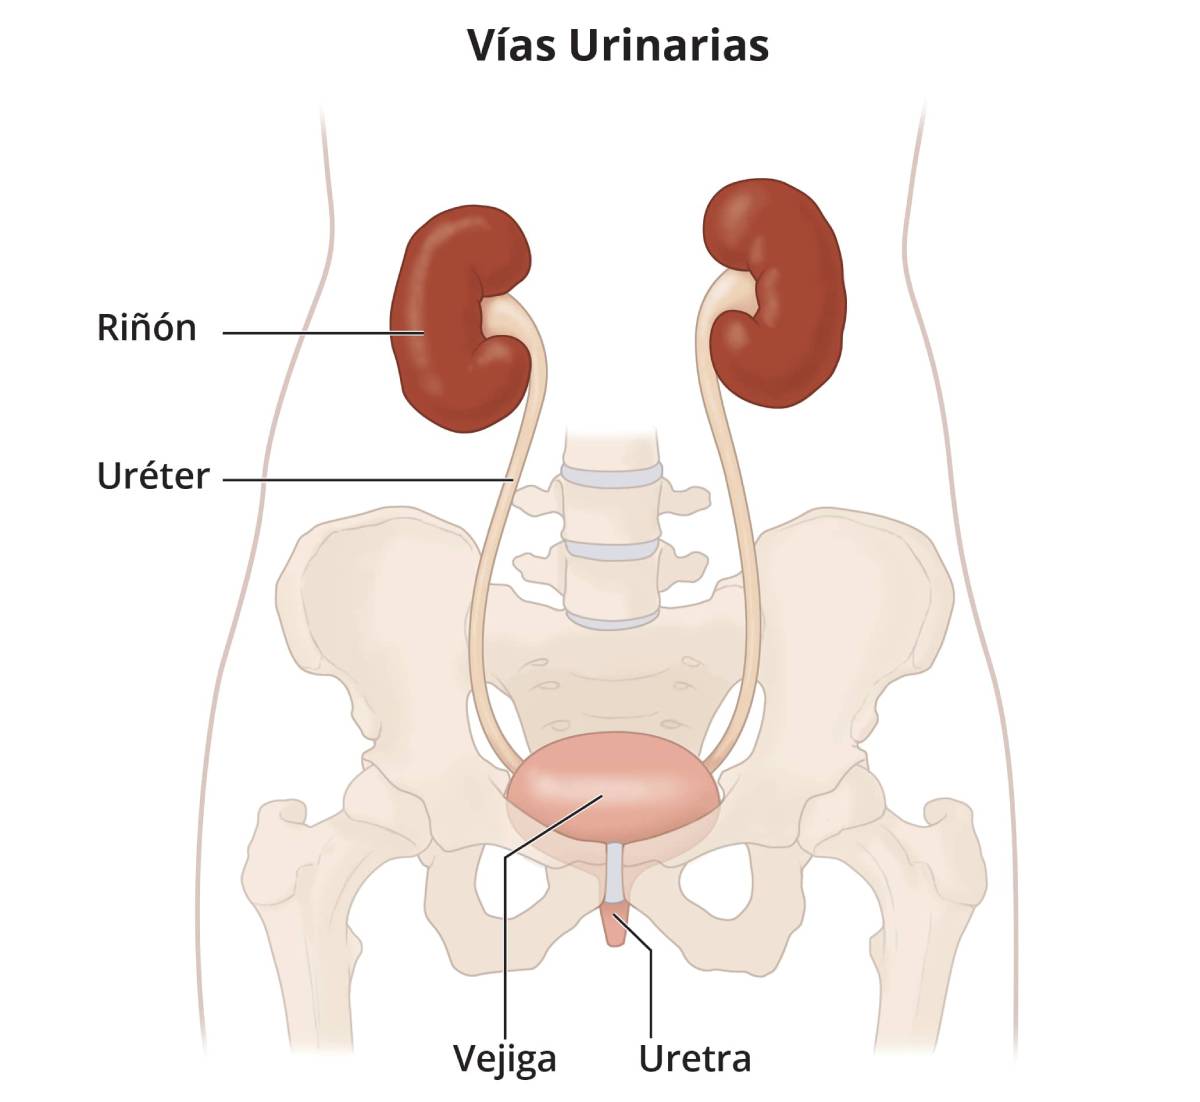 Las vías urinarias, que incluyen los riñones, los uréteres, la vejiga y la uretra.